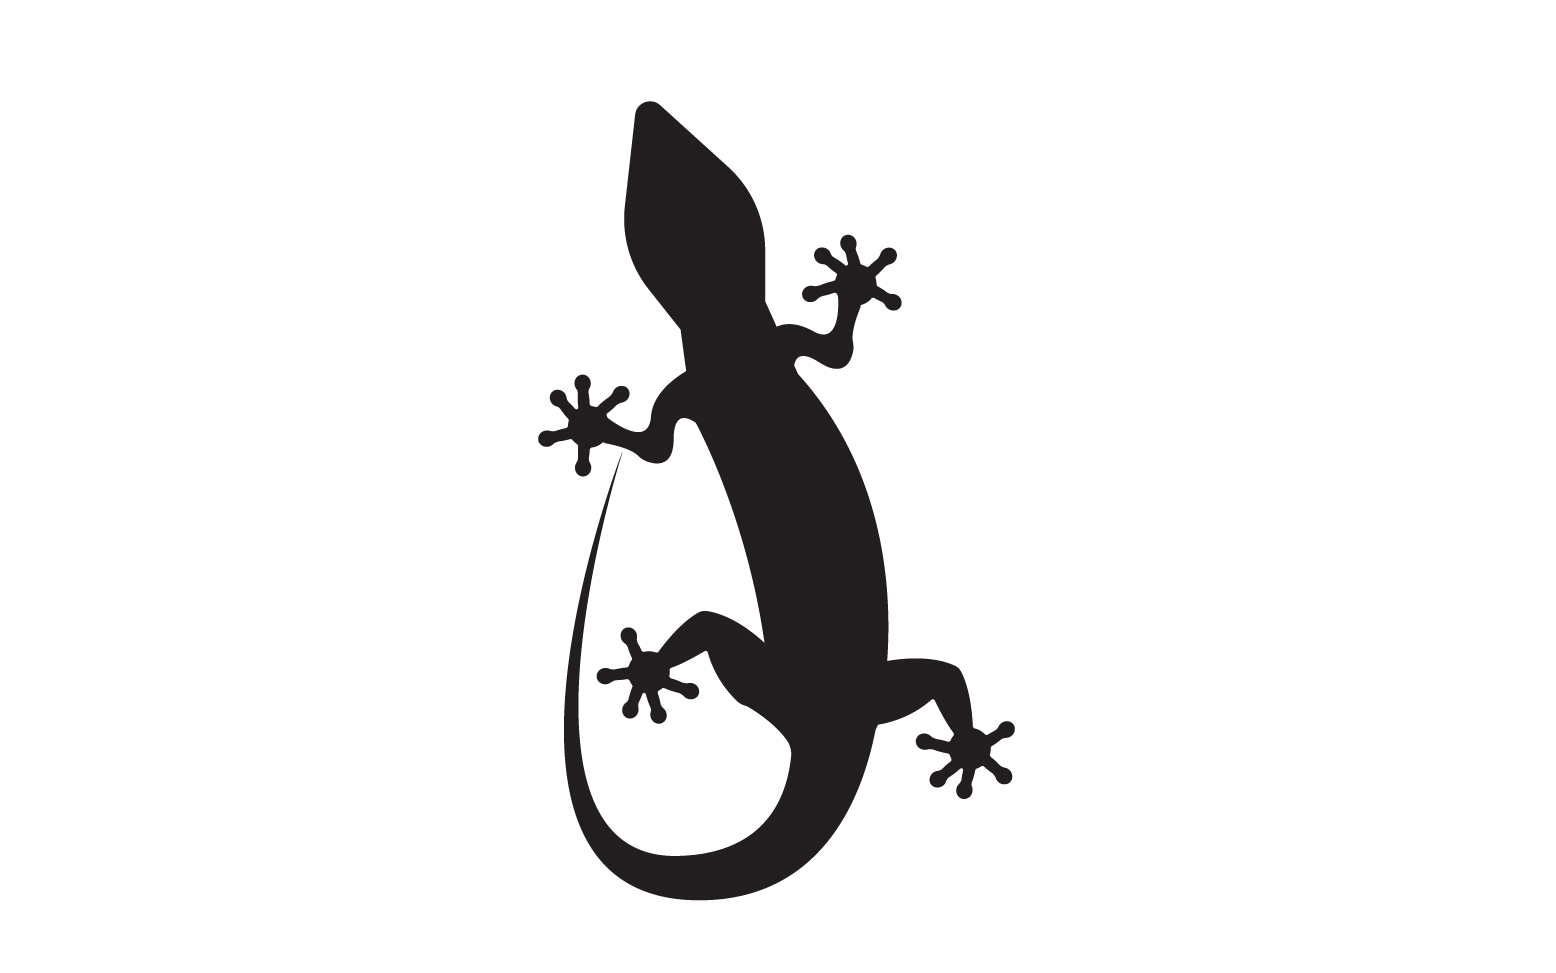 Lizard chameleon home lizard logo v15